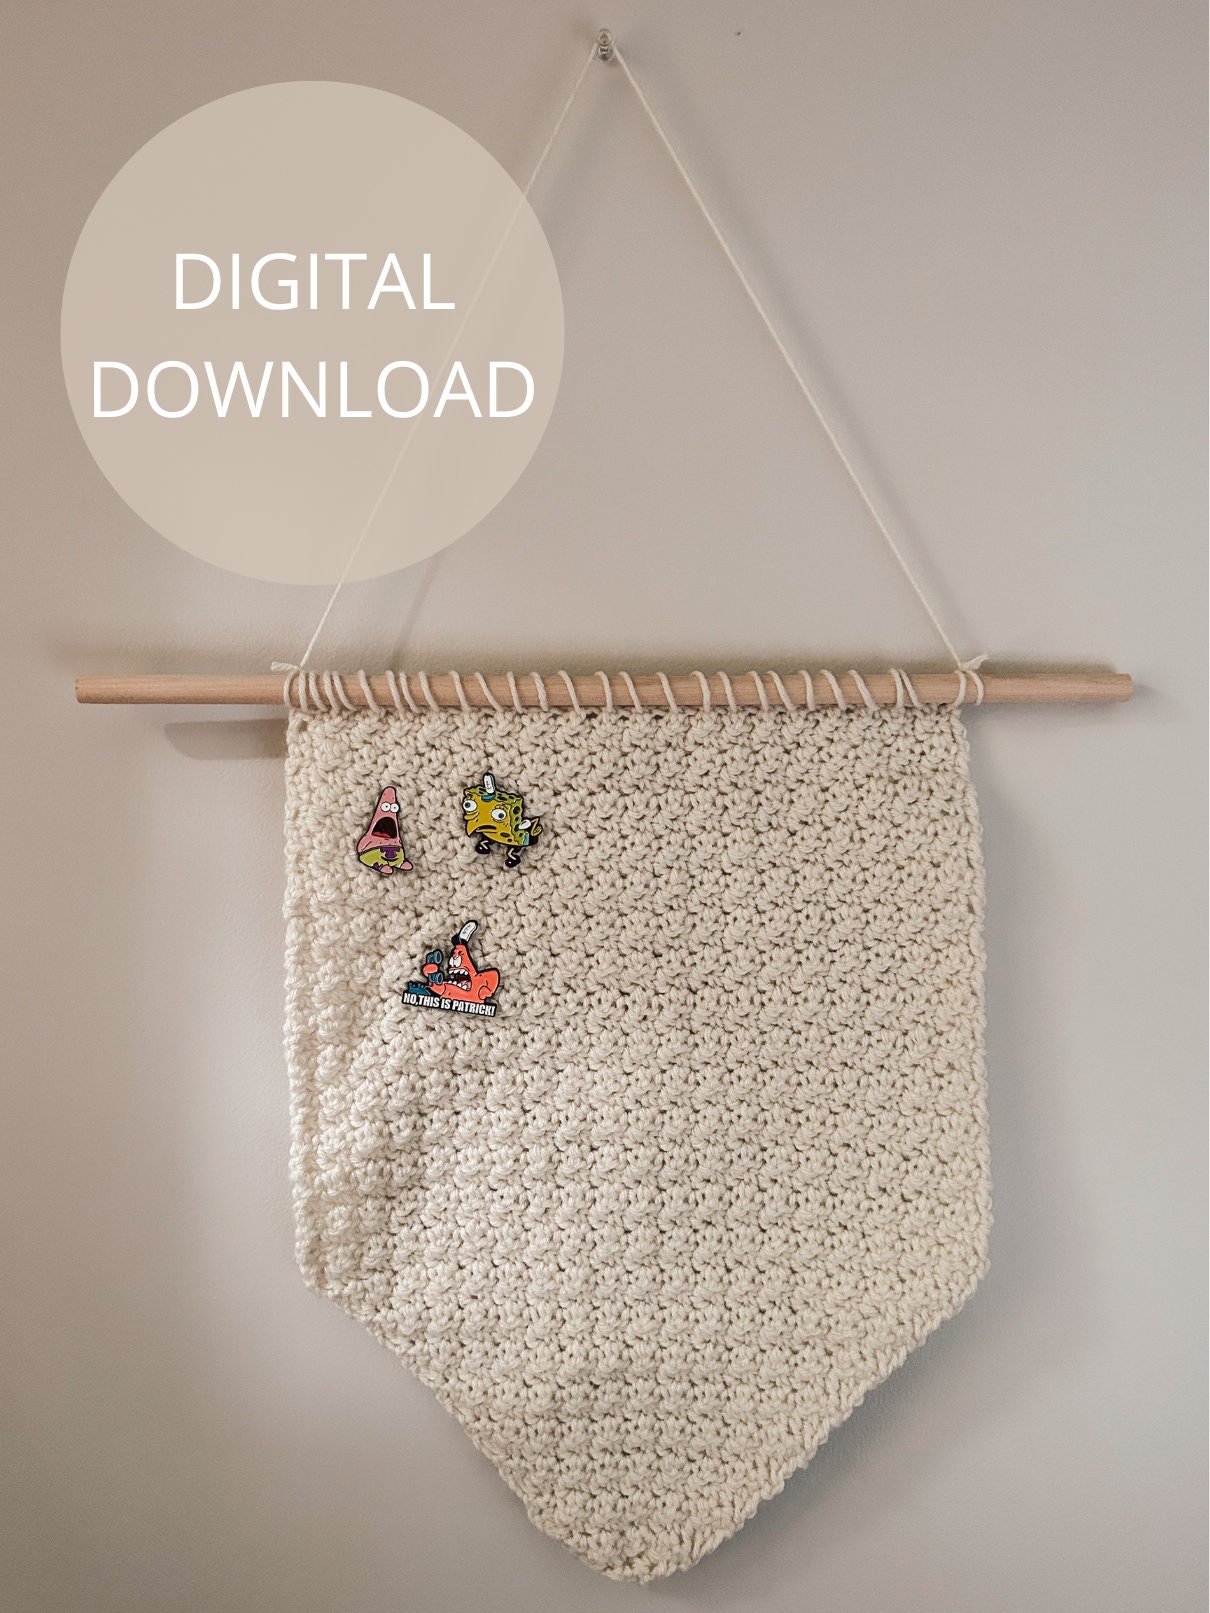 Crochet Enamel Pin by Firefly Notes - Yarn Loop